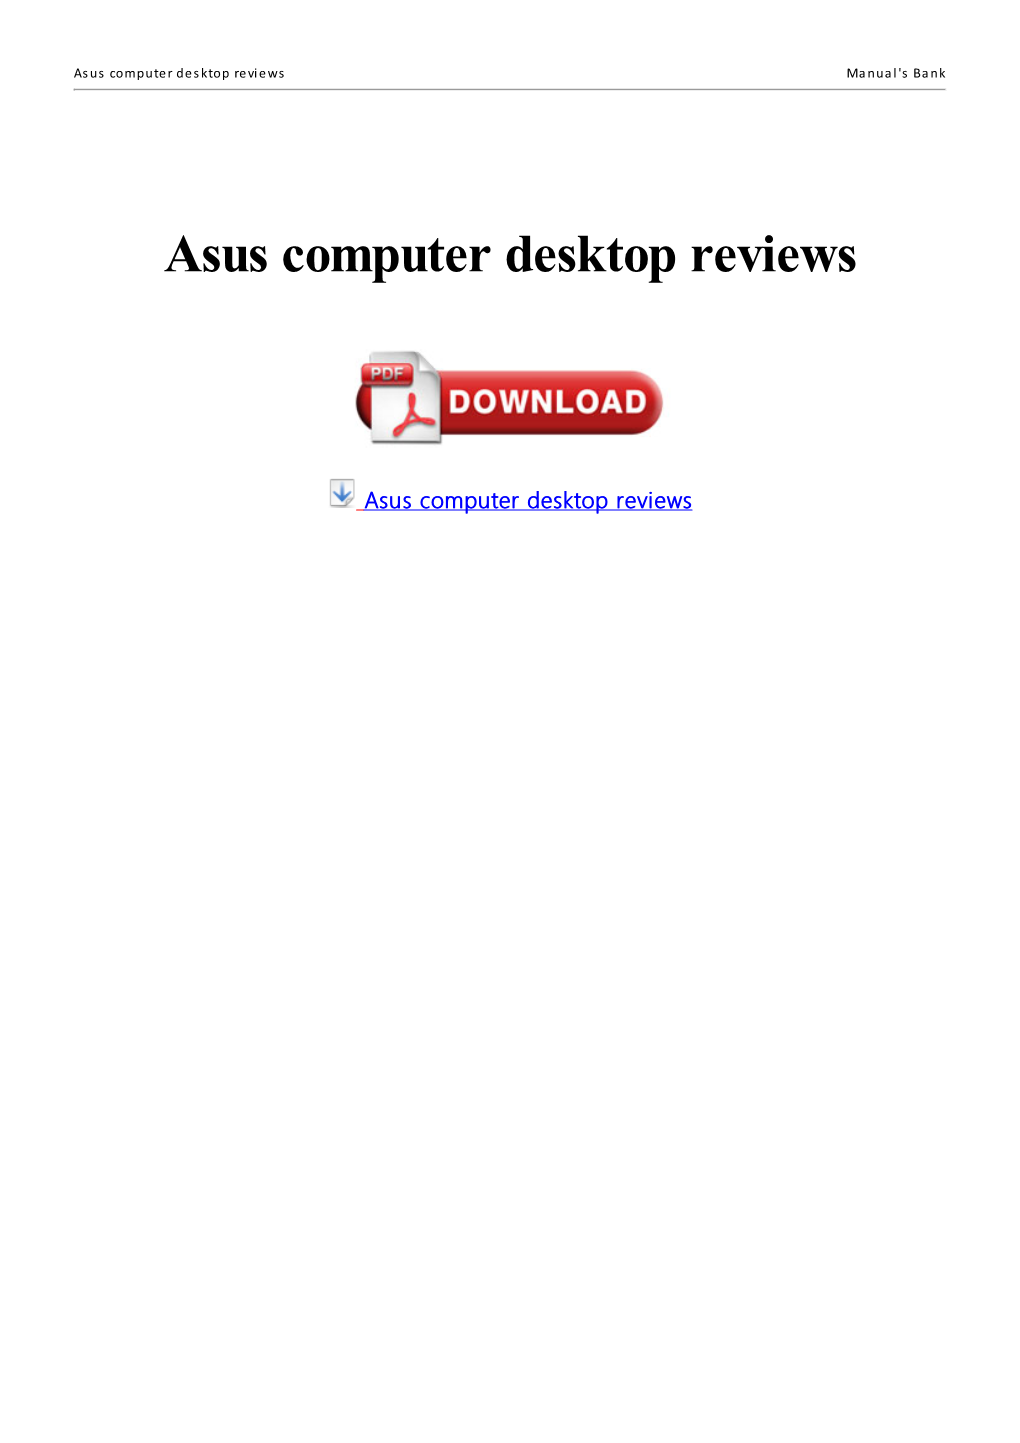 Asus Computer Desktop Reviews Manual's Bank